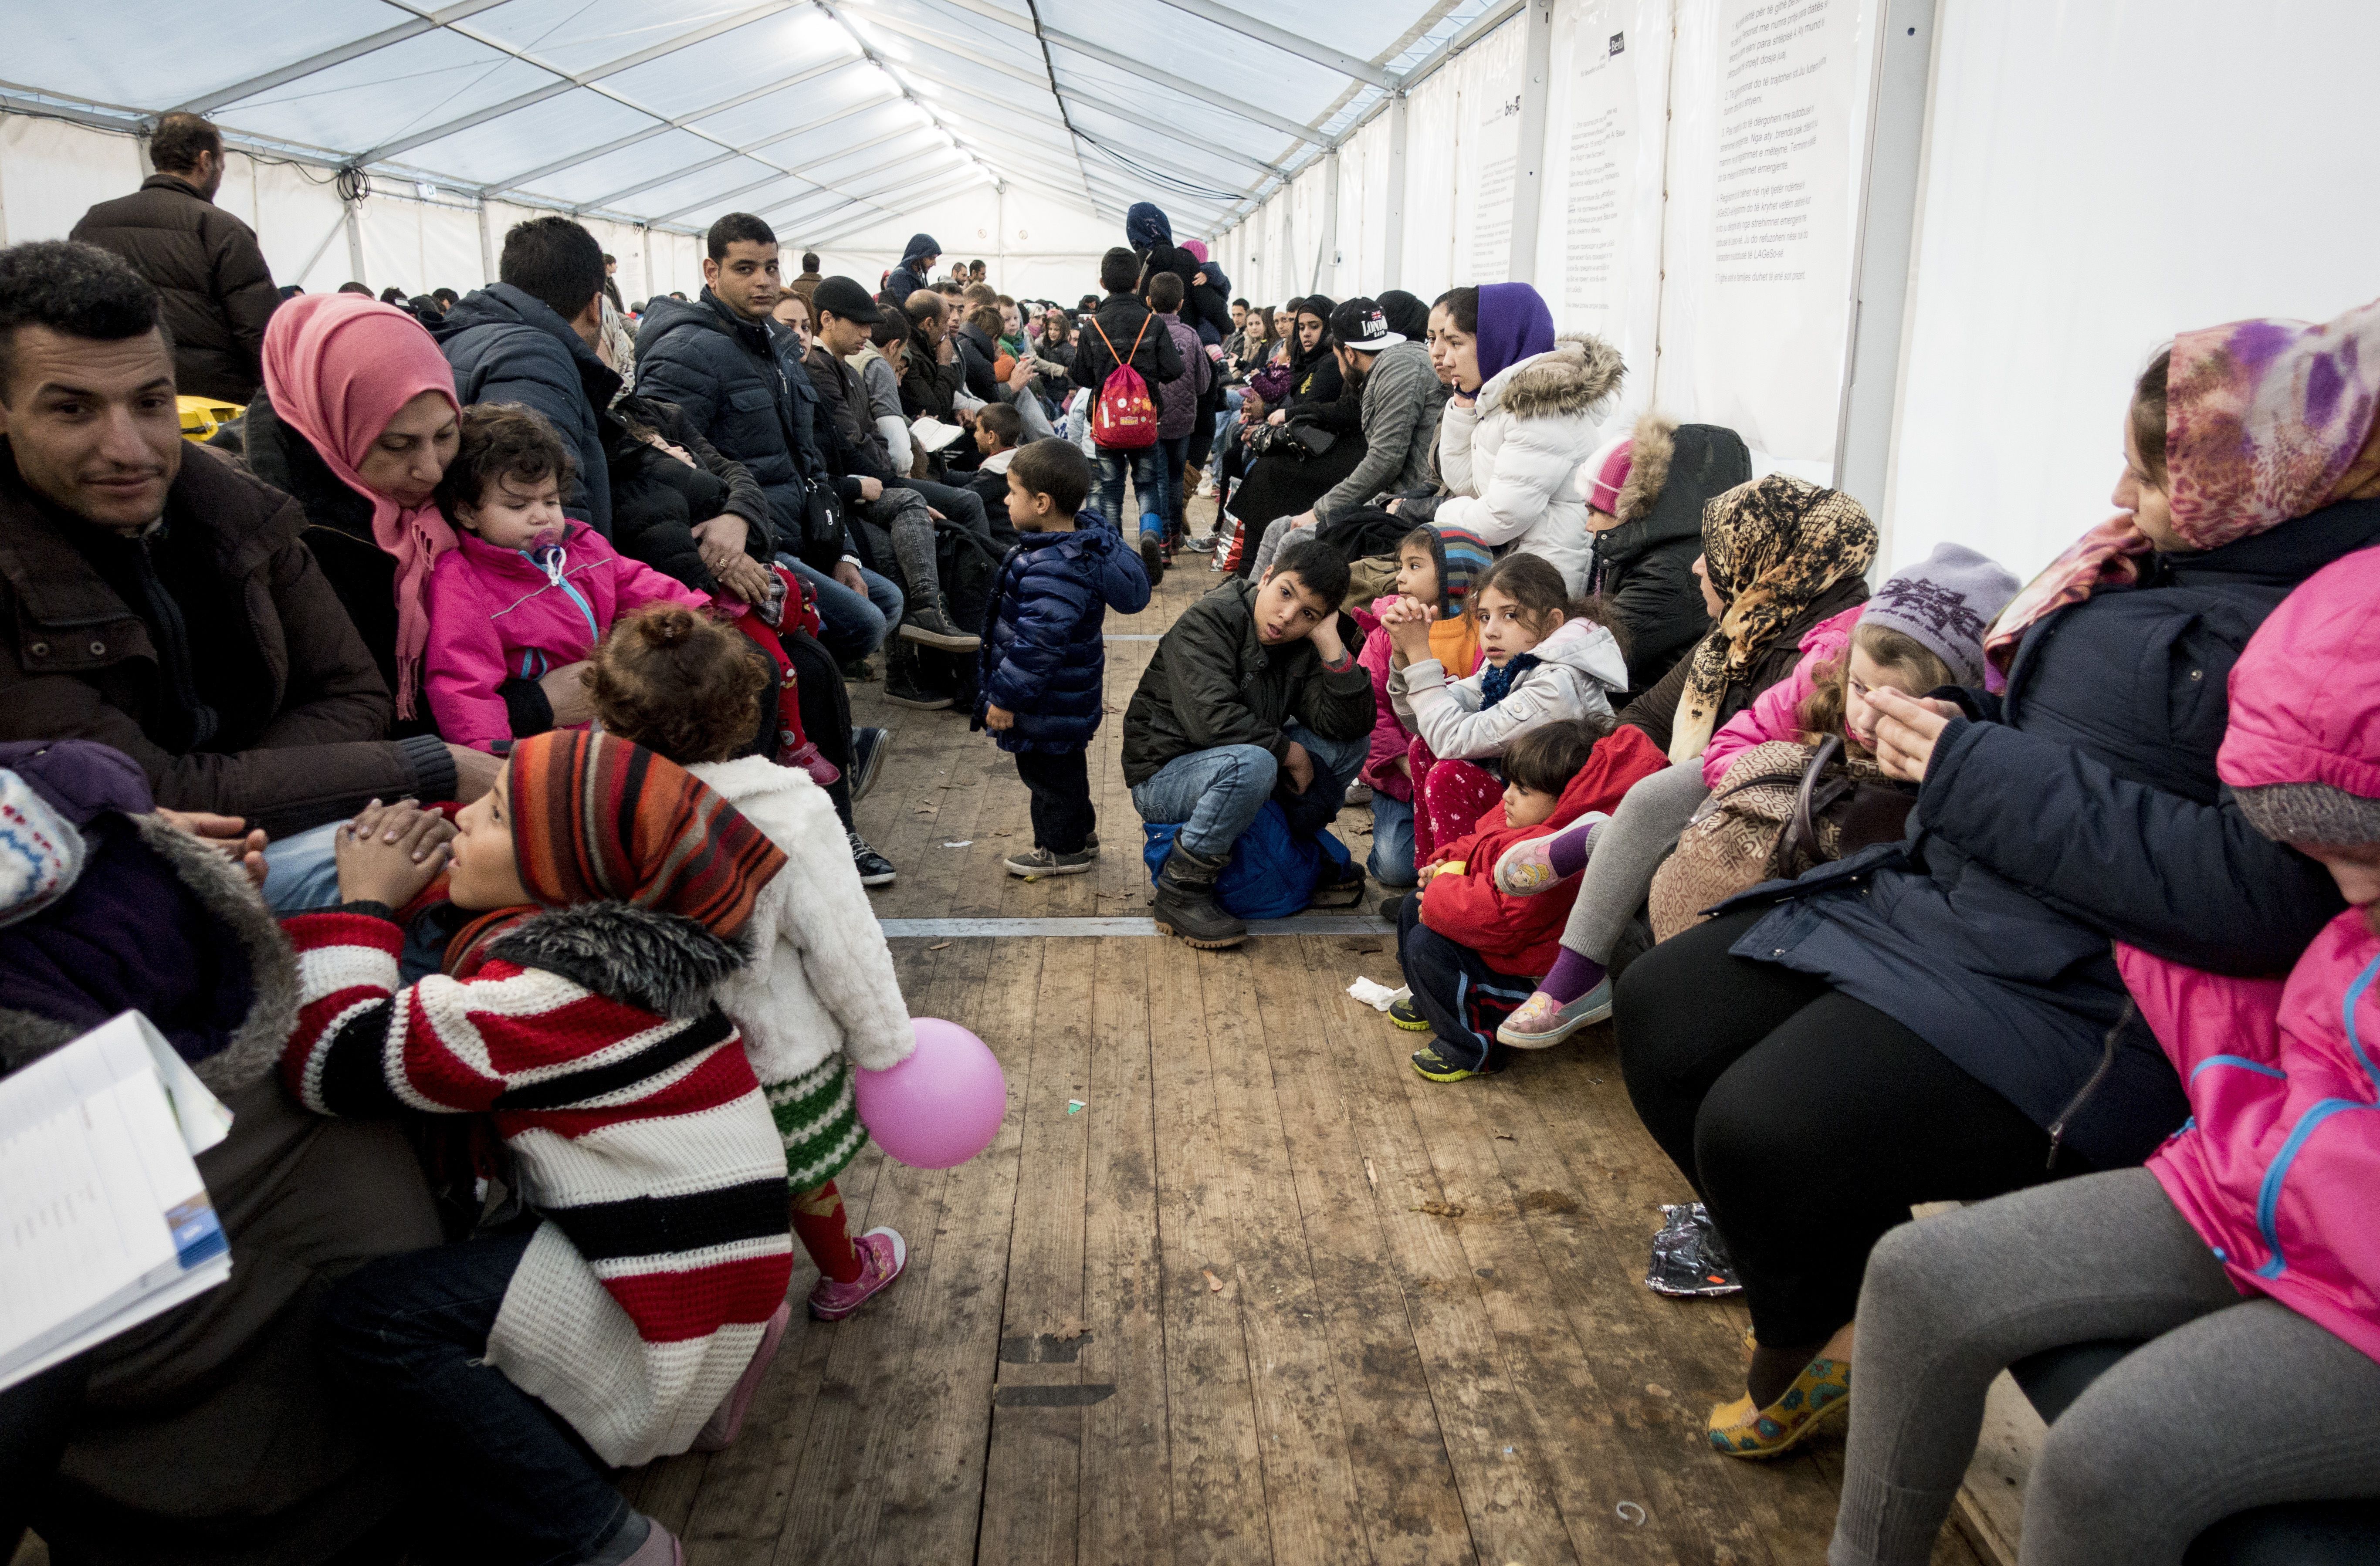 Studie: So pessimistisch sehen Deutsche die Zukunft wegen Flüchtlingskrise